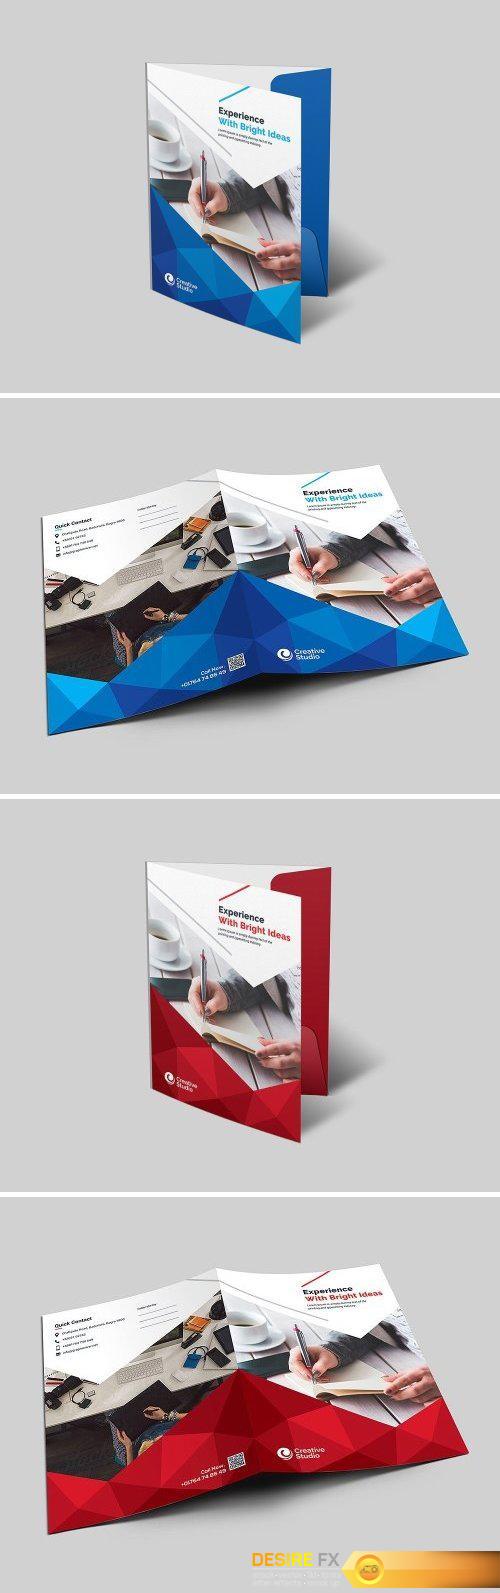 CM - Corporate Folder Design 2045079